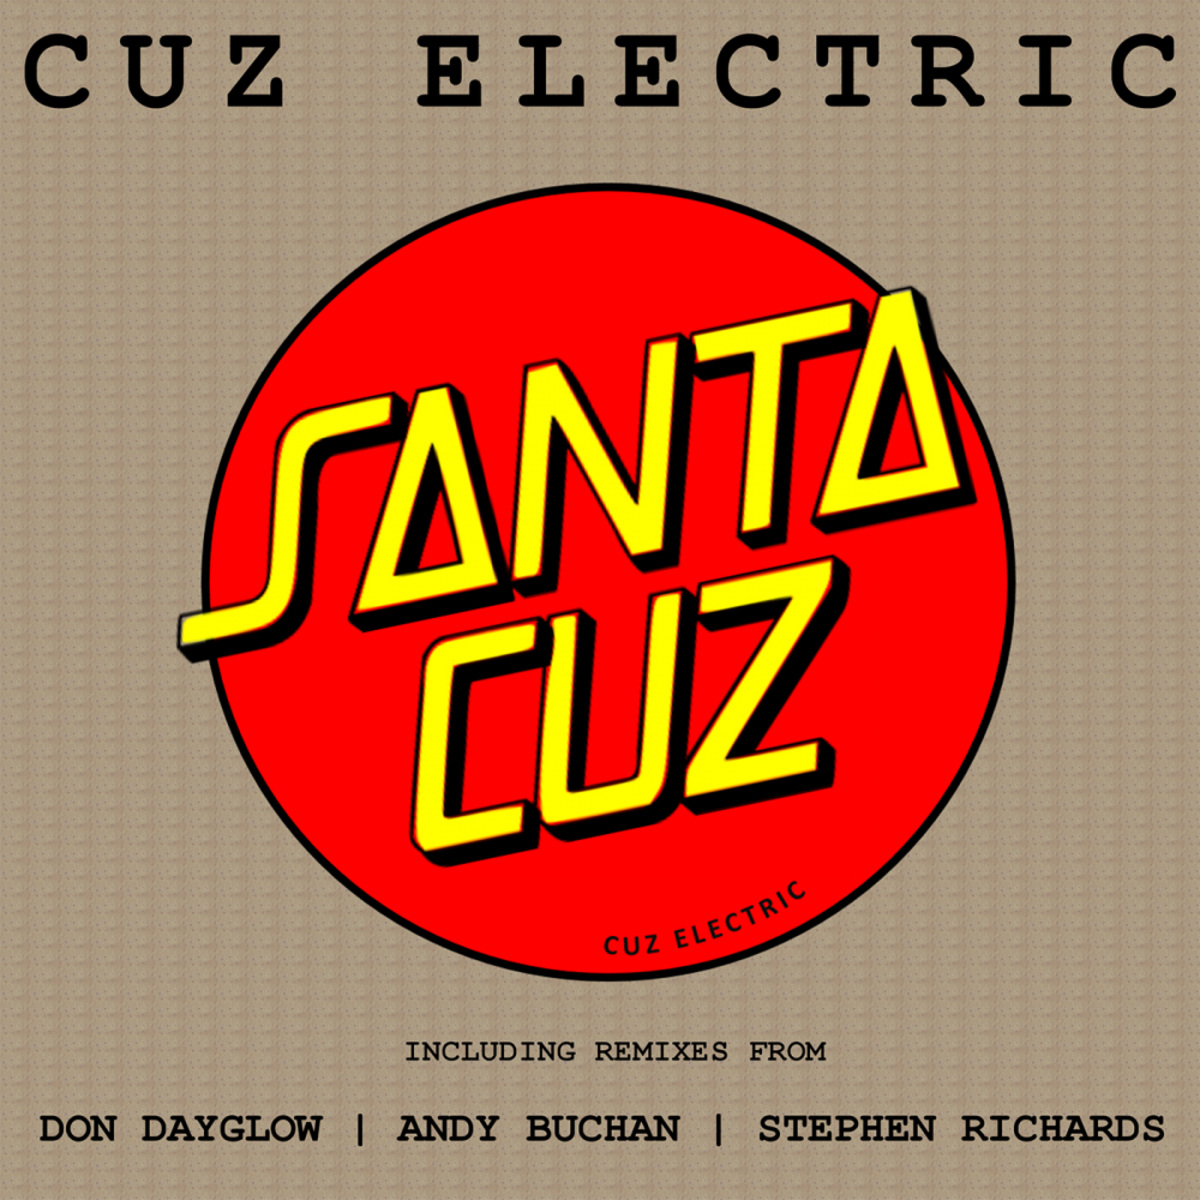 Cuz Electric - Santa Cuz / Particle Zoo Recordings